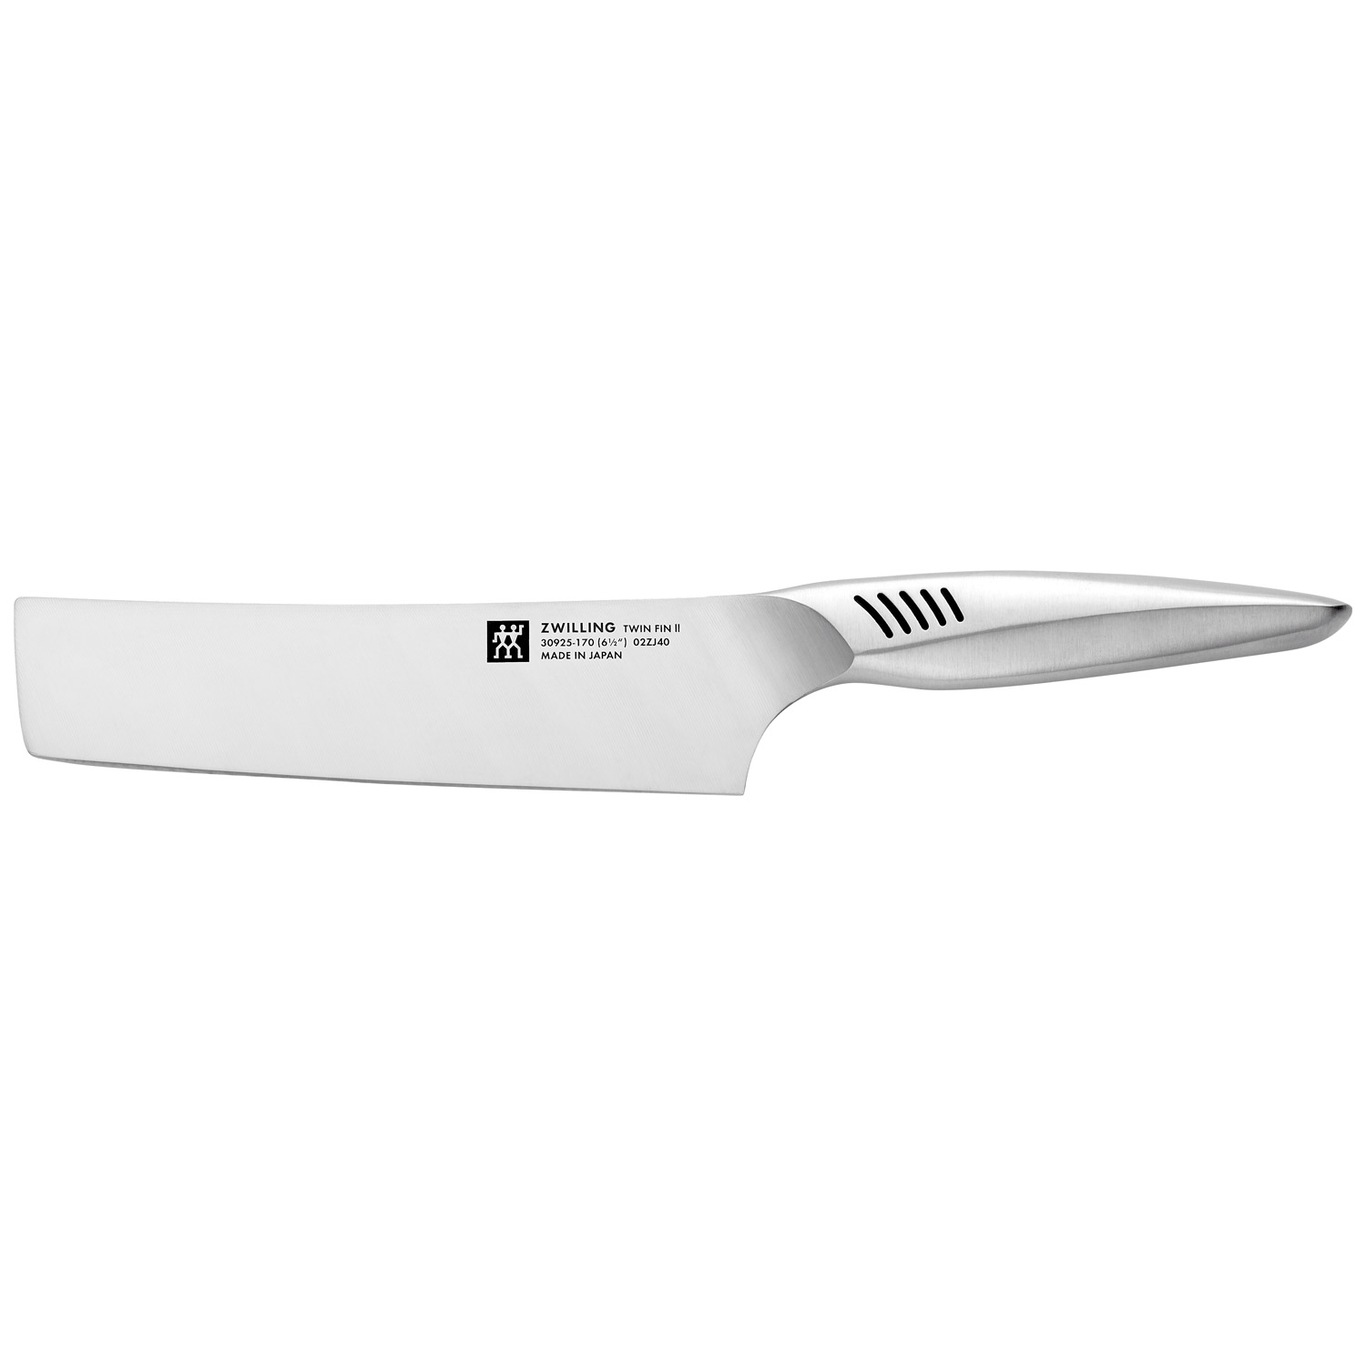 Twin Fin II Nakiri Vegetable Knife 16,5 cm